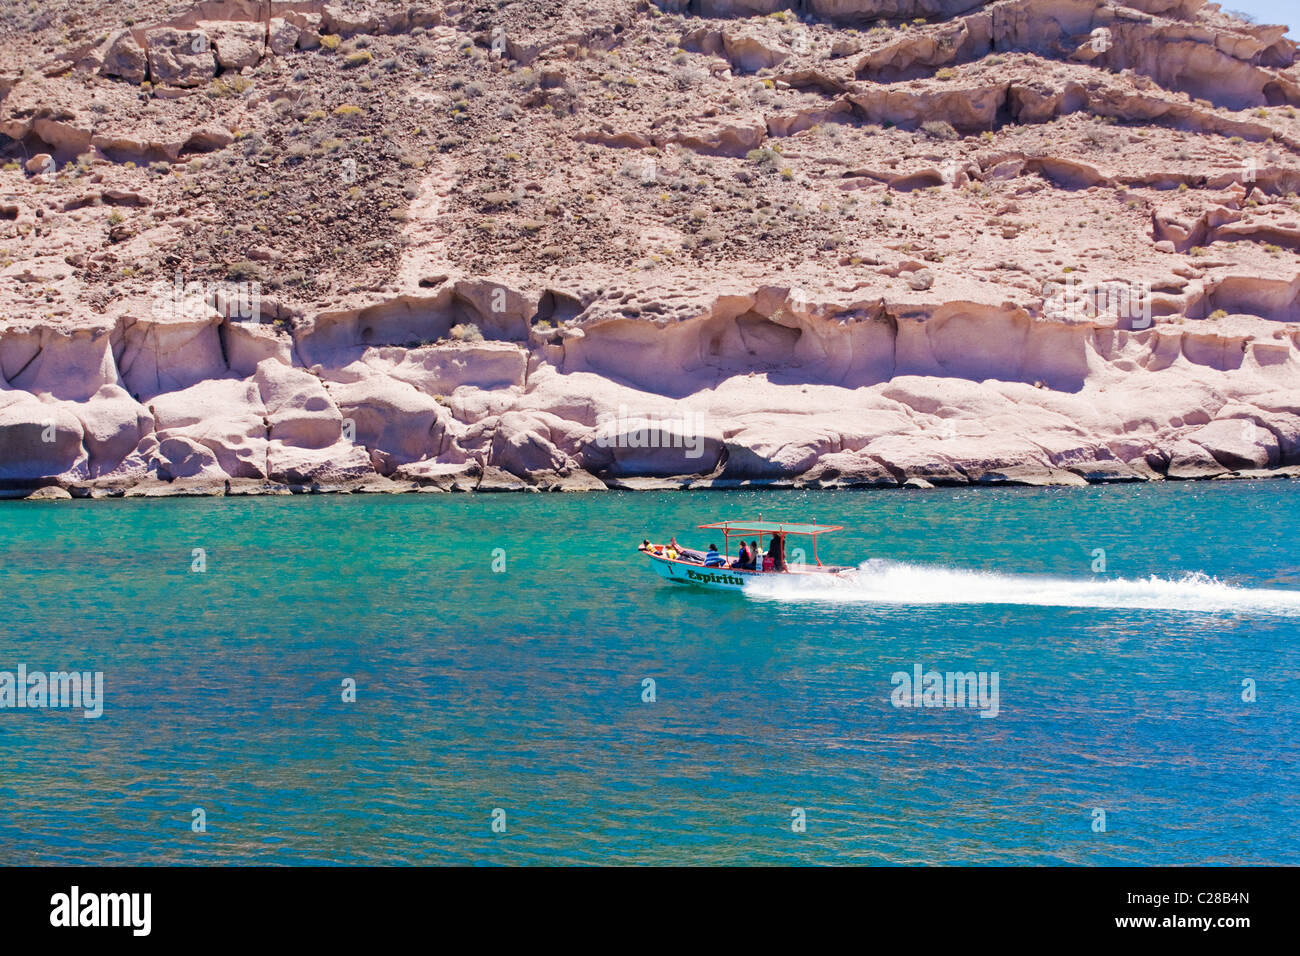 Tourist boat, Gulf of California (Sea of Cortez), Baja California, Mexico. Stock Photo